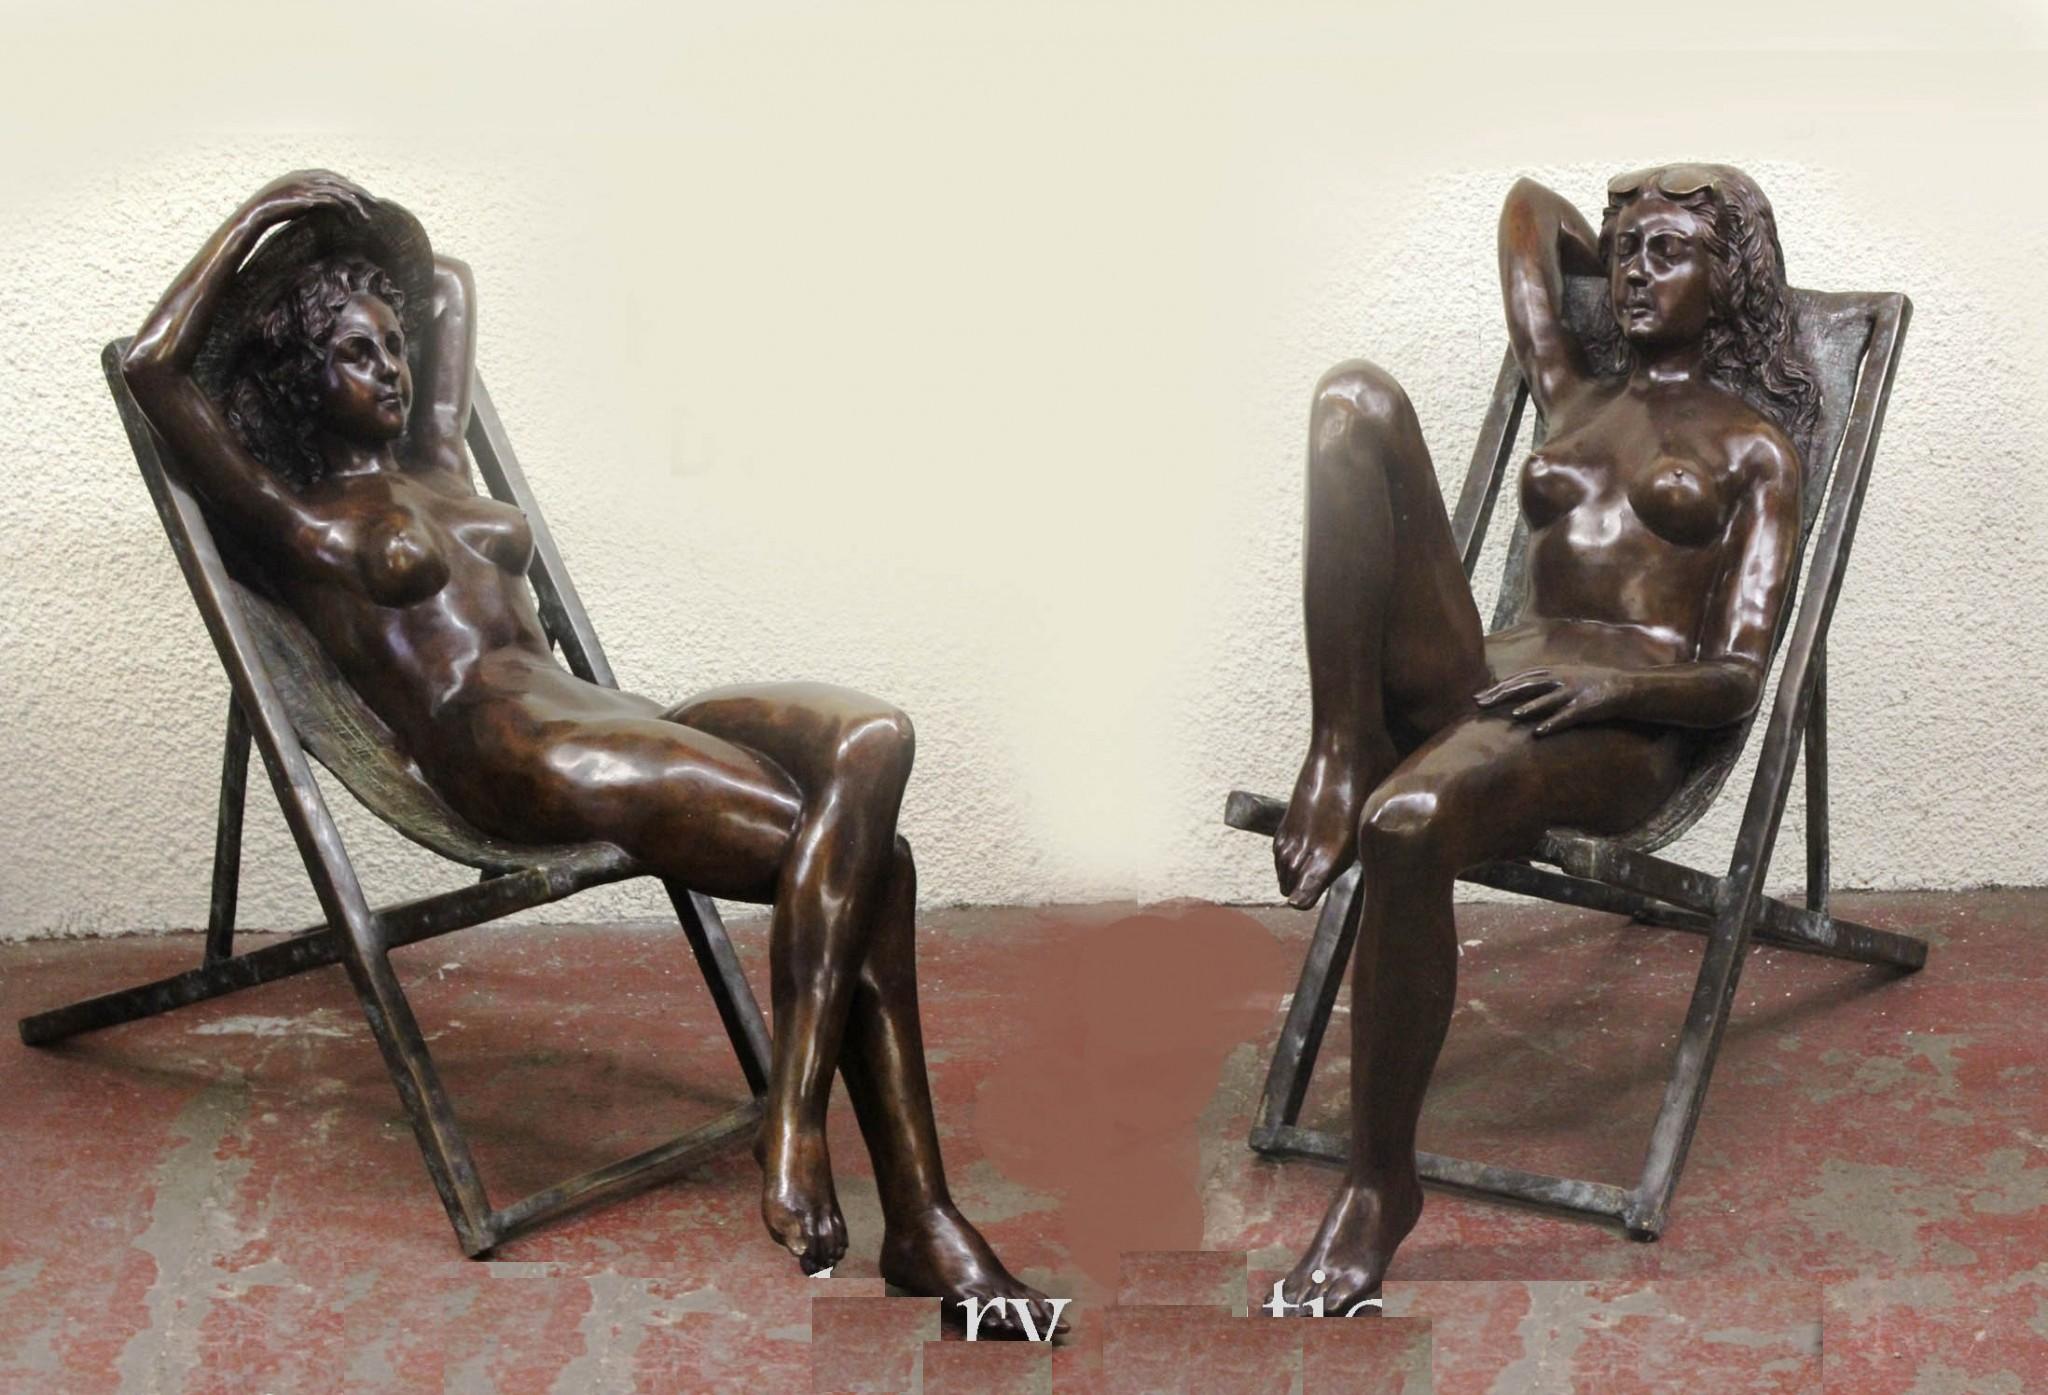 Wunderschönes Paar lebensgroßer nackter Frauen aus Bronze, die in Liegestühlen liegen
Großartig für den Garten und da sie aus Bronze sind, können sie draußen leben, ohne zu rosten.
Skurriles Paar mit toller Patina
Kann bei Bedarf auch einzeln